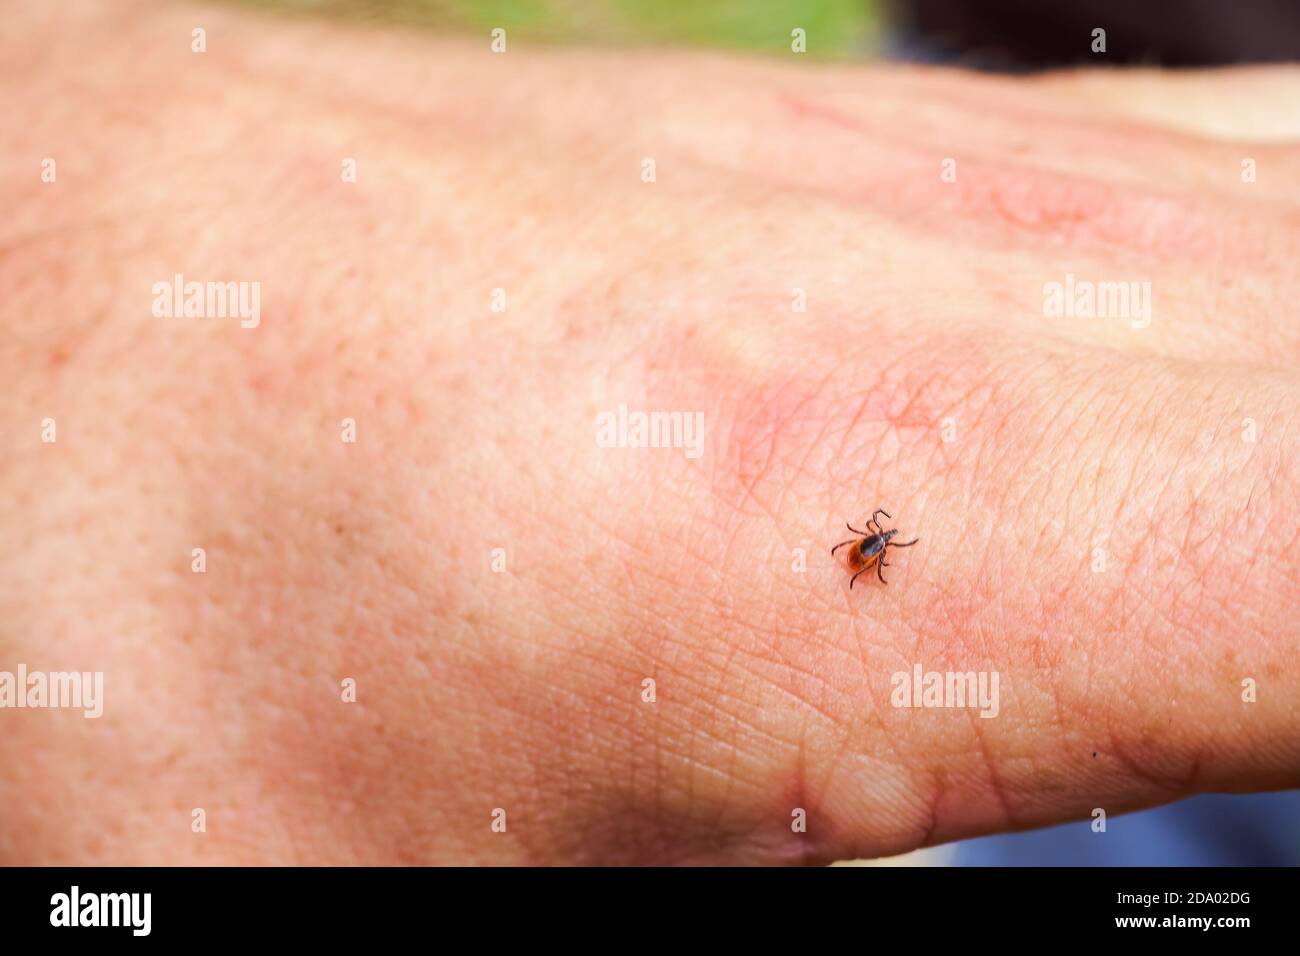 Graduazione, acaro duro della famiglia Ixodidae sulla mano umana. Porta di patogeni che possono causare malattie umane. Foto Stock